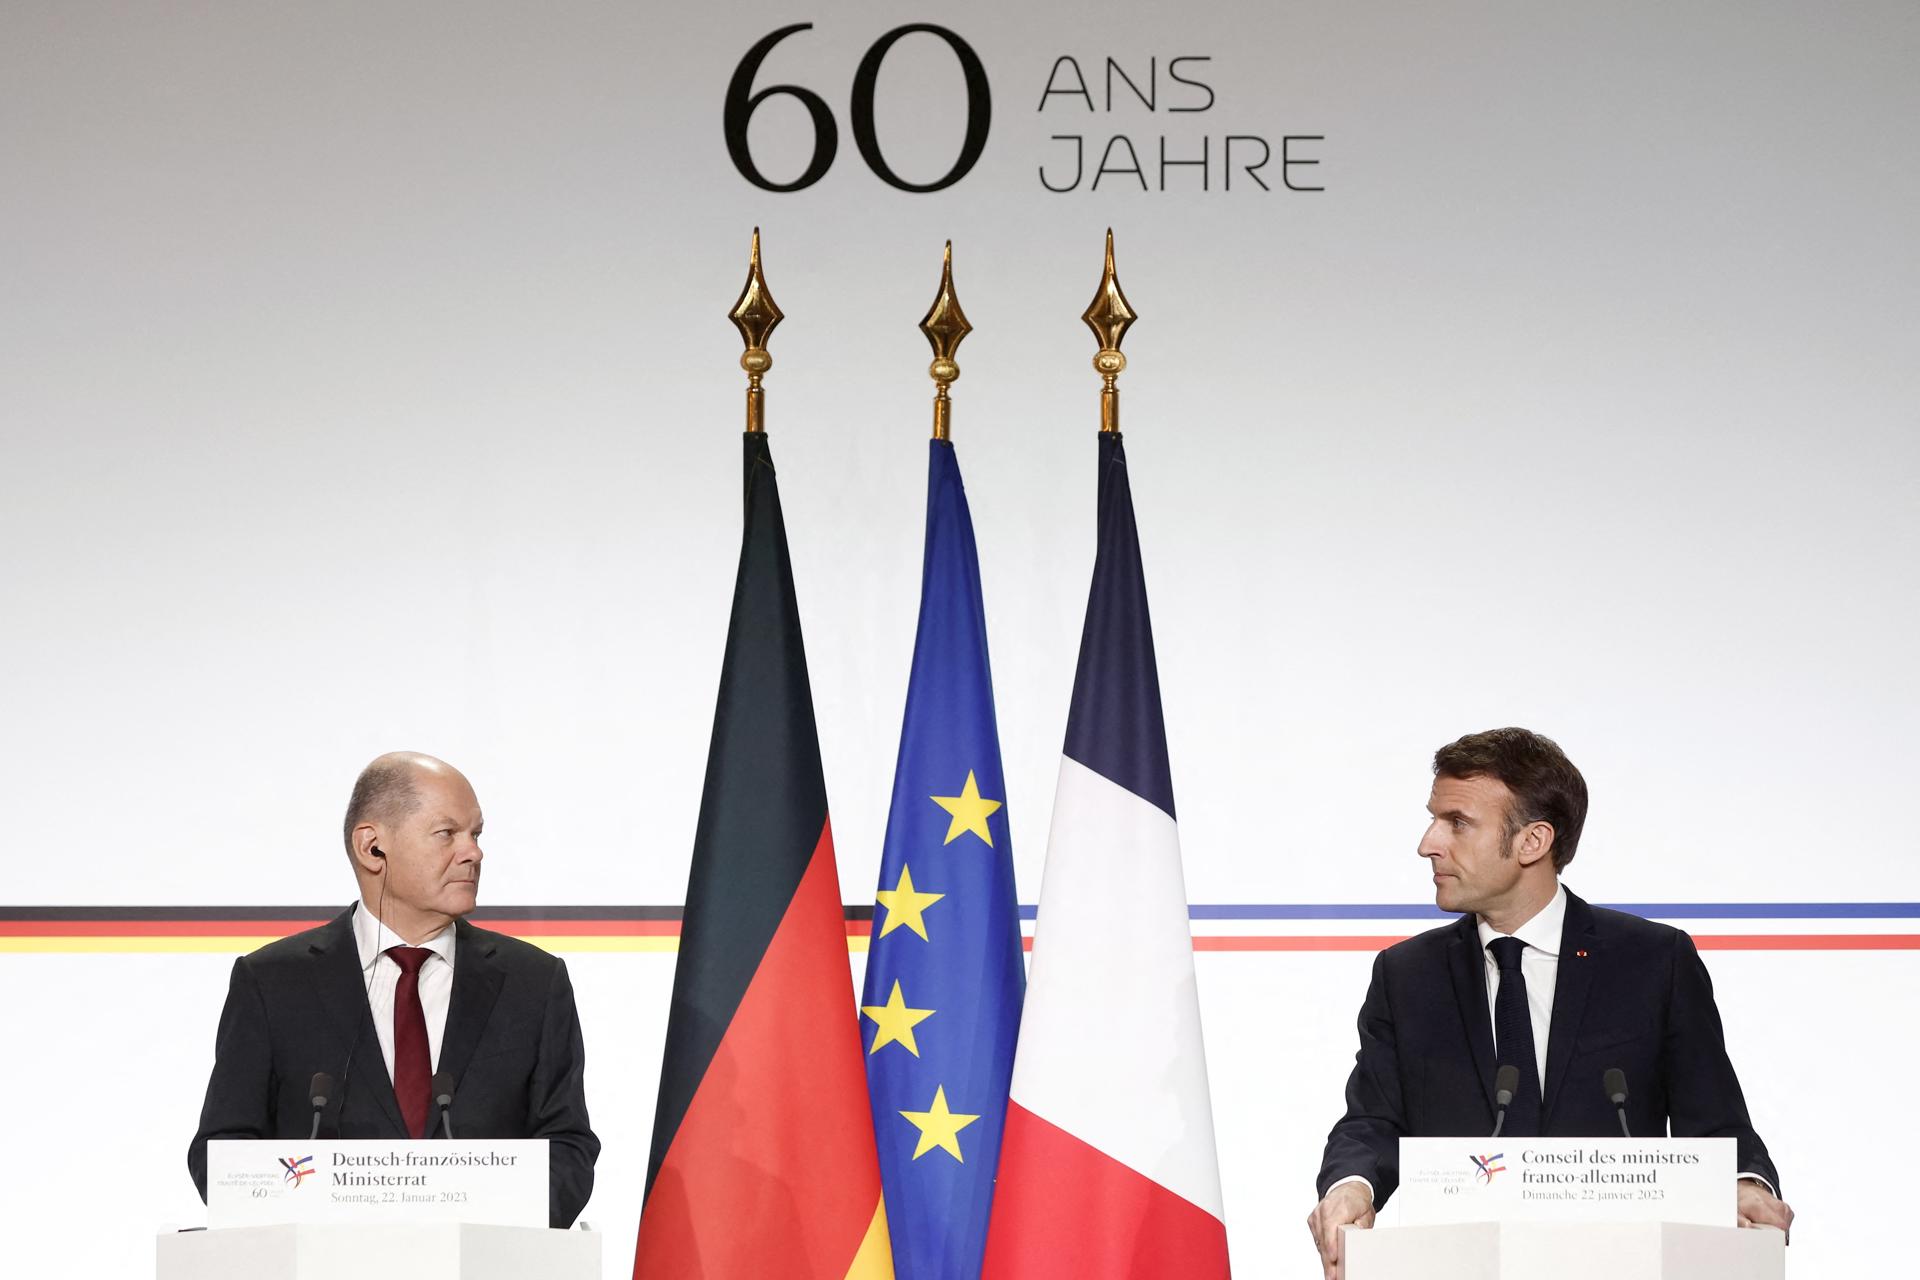 El presidente francés, Emmanuel Macron (R), y el canciller alemán, Olaf Scholz, en conferencia de prensa. EFE/EPA/BENOIT TESSIER / POOL MAXPPP OUT